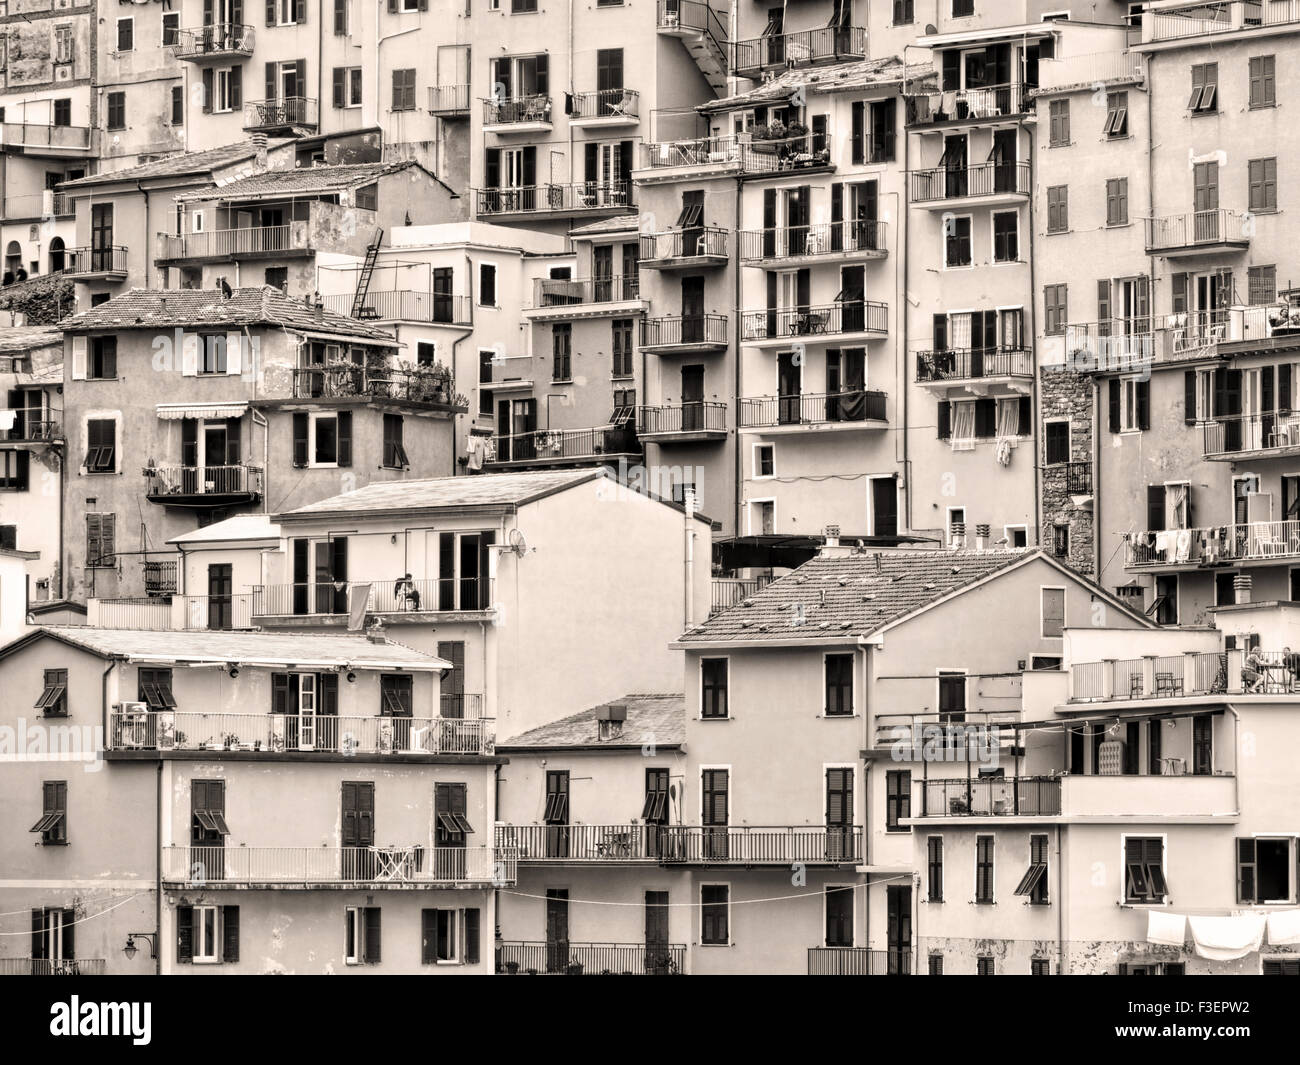 Manarola Dorf der Cinque Terre, Italien. Touristischer Magnet in Italien. Getönte Monochrom-Bild die Architektur hervorzuheben Stockfoto